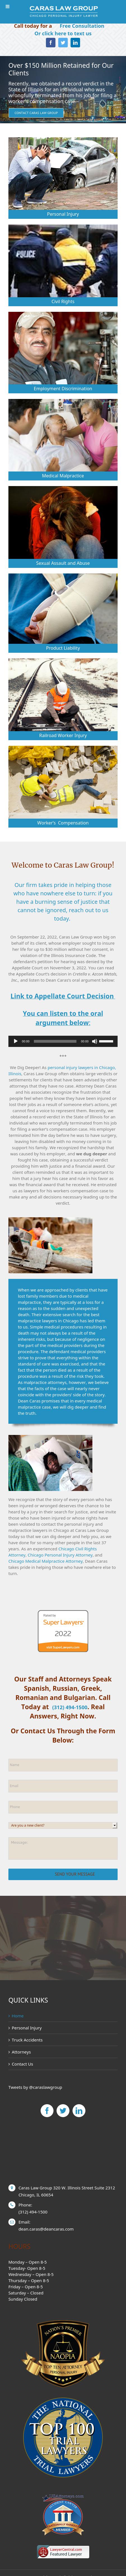 Dean J. Caras & Associates - Chicago IL Lawyers